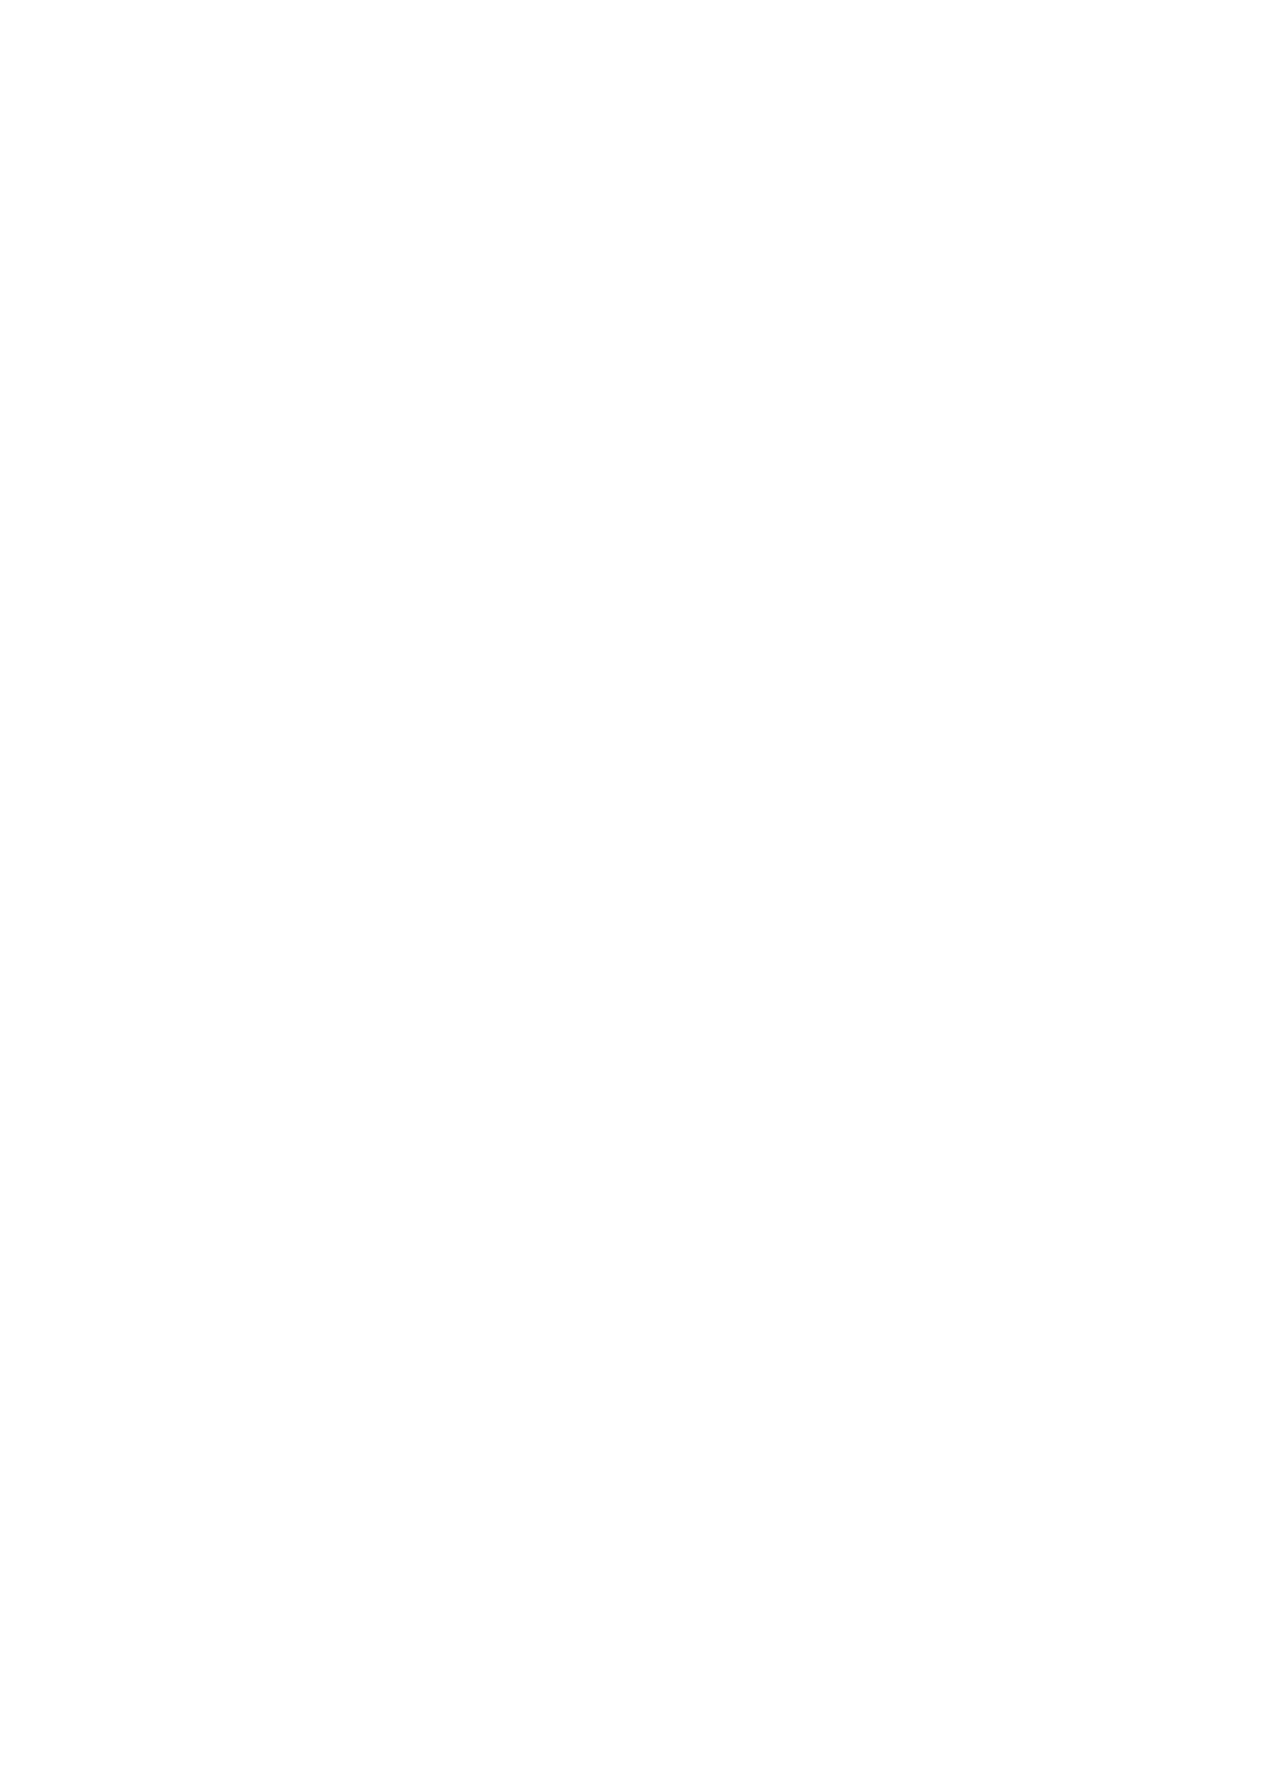 [んほぉおおおぉおおおおおお♥おっ♥おっ♥ (大童貞男)] ヤリチンにご奉仕セックスする生オナホと性処理メイド寝取らせ本 (Fate/Grand Order) [中国翻訳] [DL版]